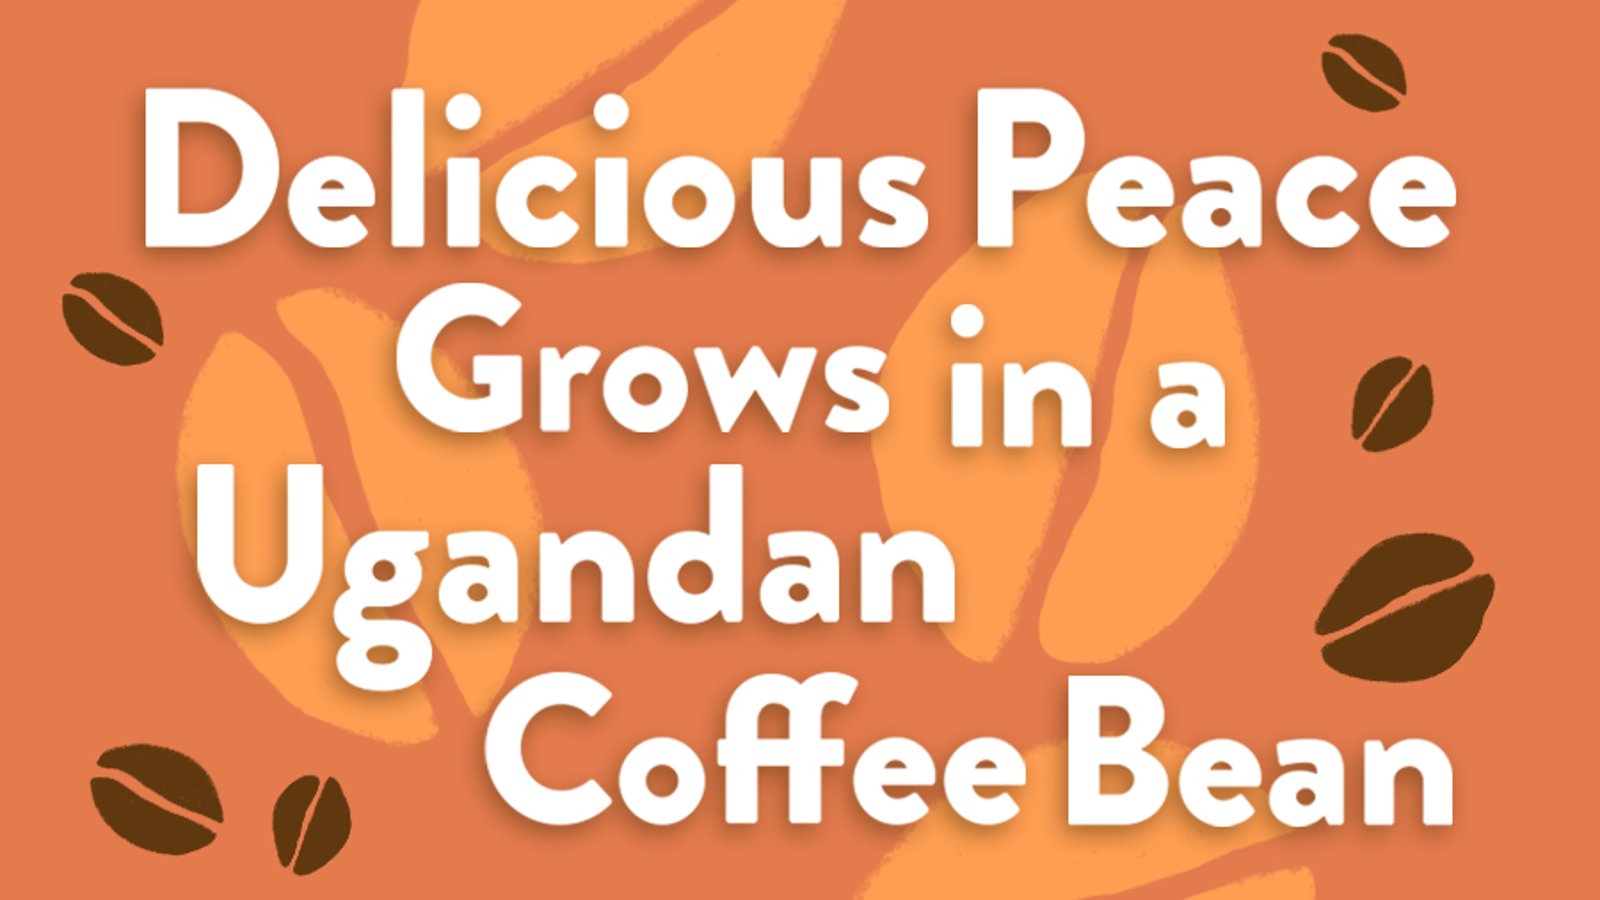 Delicious Peace Grows in a Ugandan Coffee Bean